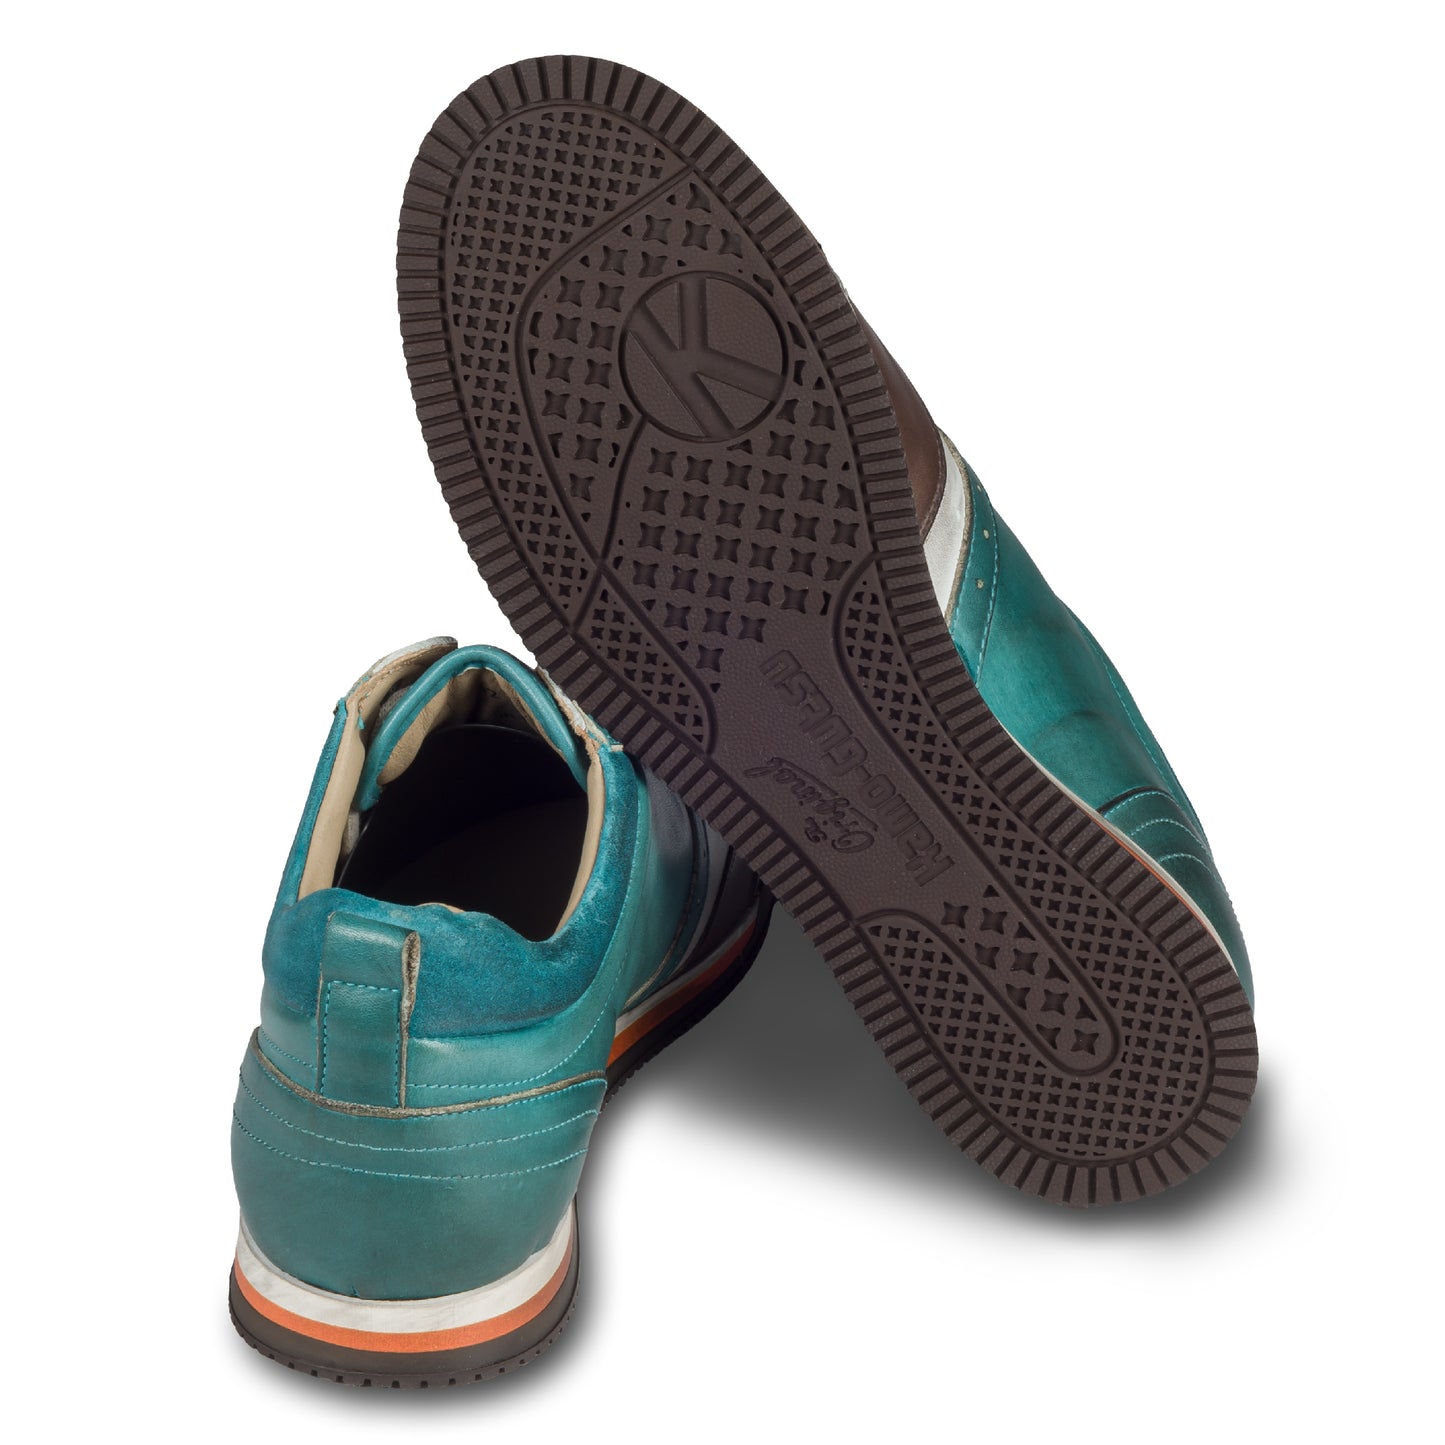 KAMO-GUTSU Herren Leder Sneaker türkis blau / weiß / braun / grau, Retro-Optik. Modell SCUDO-005 sugar combi. Handgefertigt in Italien. Ansicht der Ferse und Sohlenunterseite. 